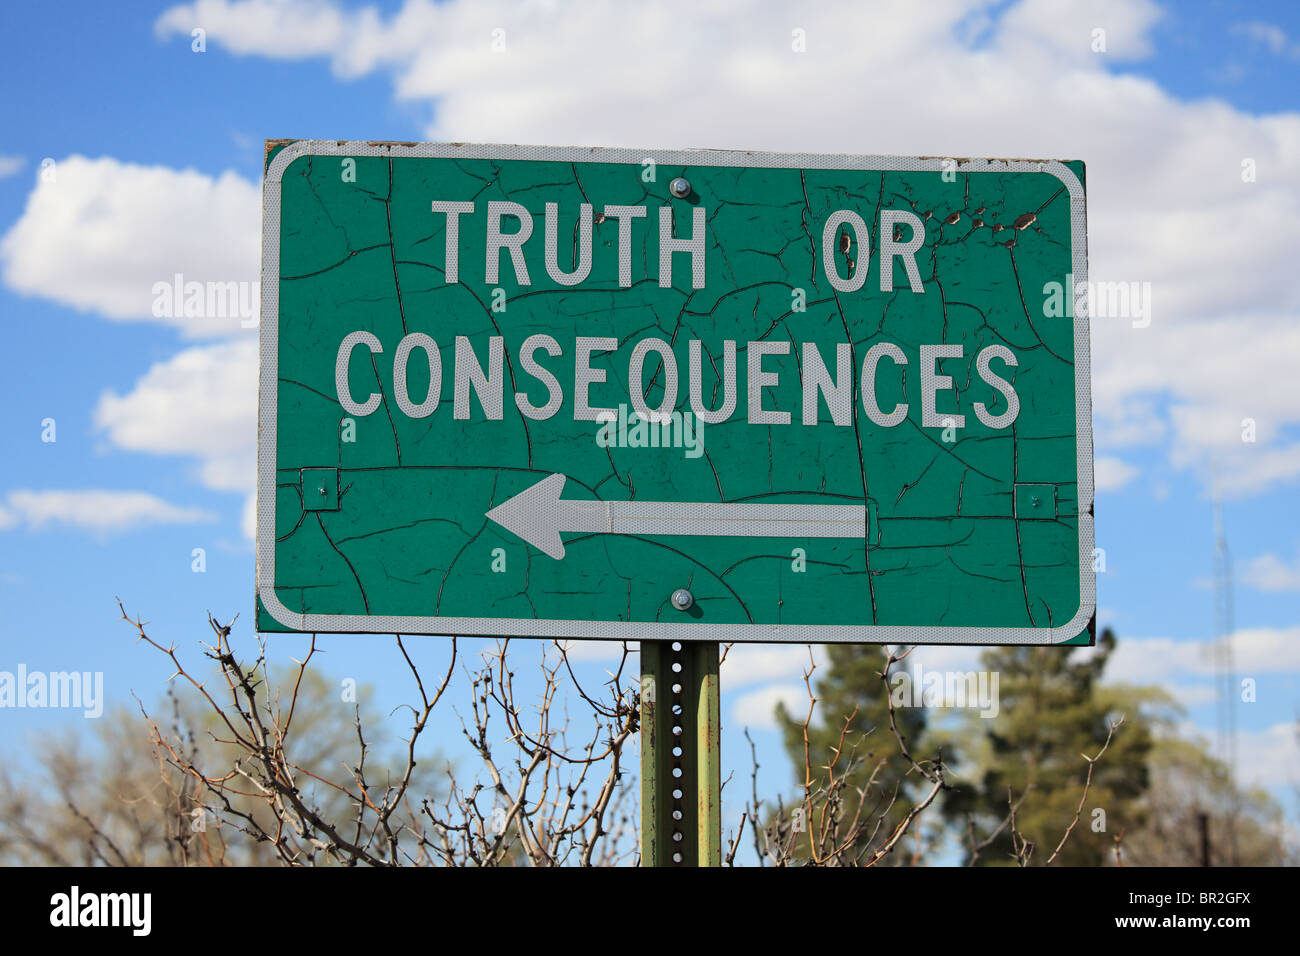 Panneau routier dans les régions rurales du Nouveau-Mexique pour la ville de vérité ou conséquences. Banque D'Images